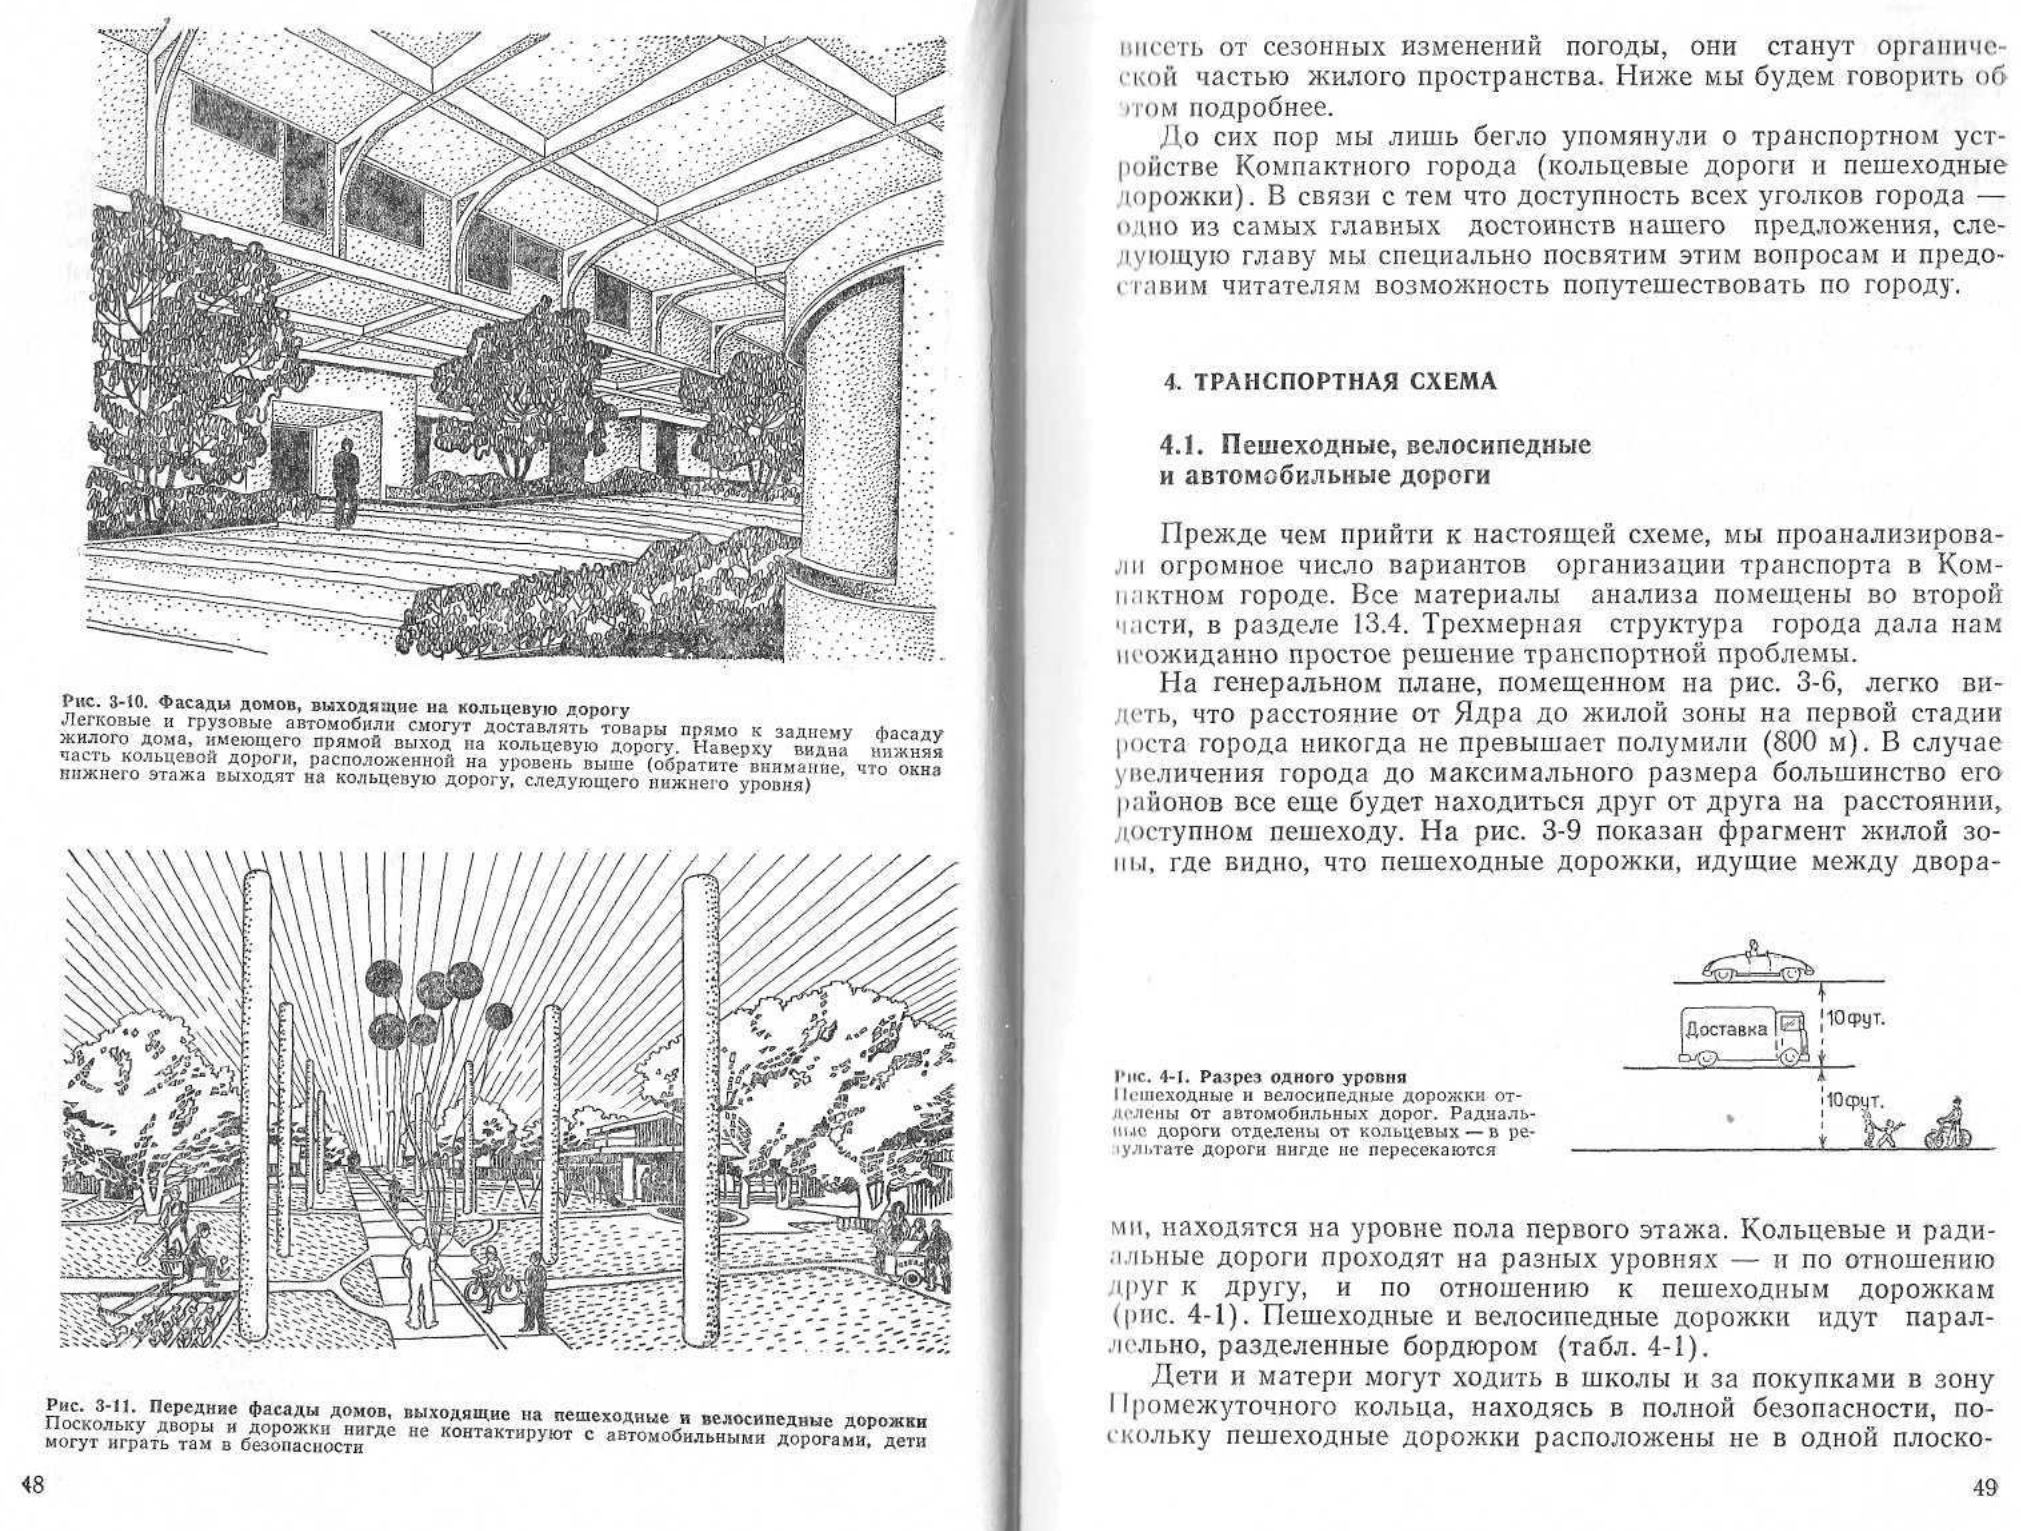 Компактный город : Проект организации городской среды / Дж. Данциг, Т. Саати. — Москва : Стройиздат, 1977